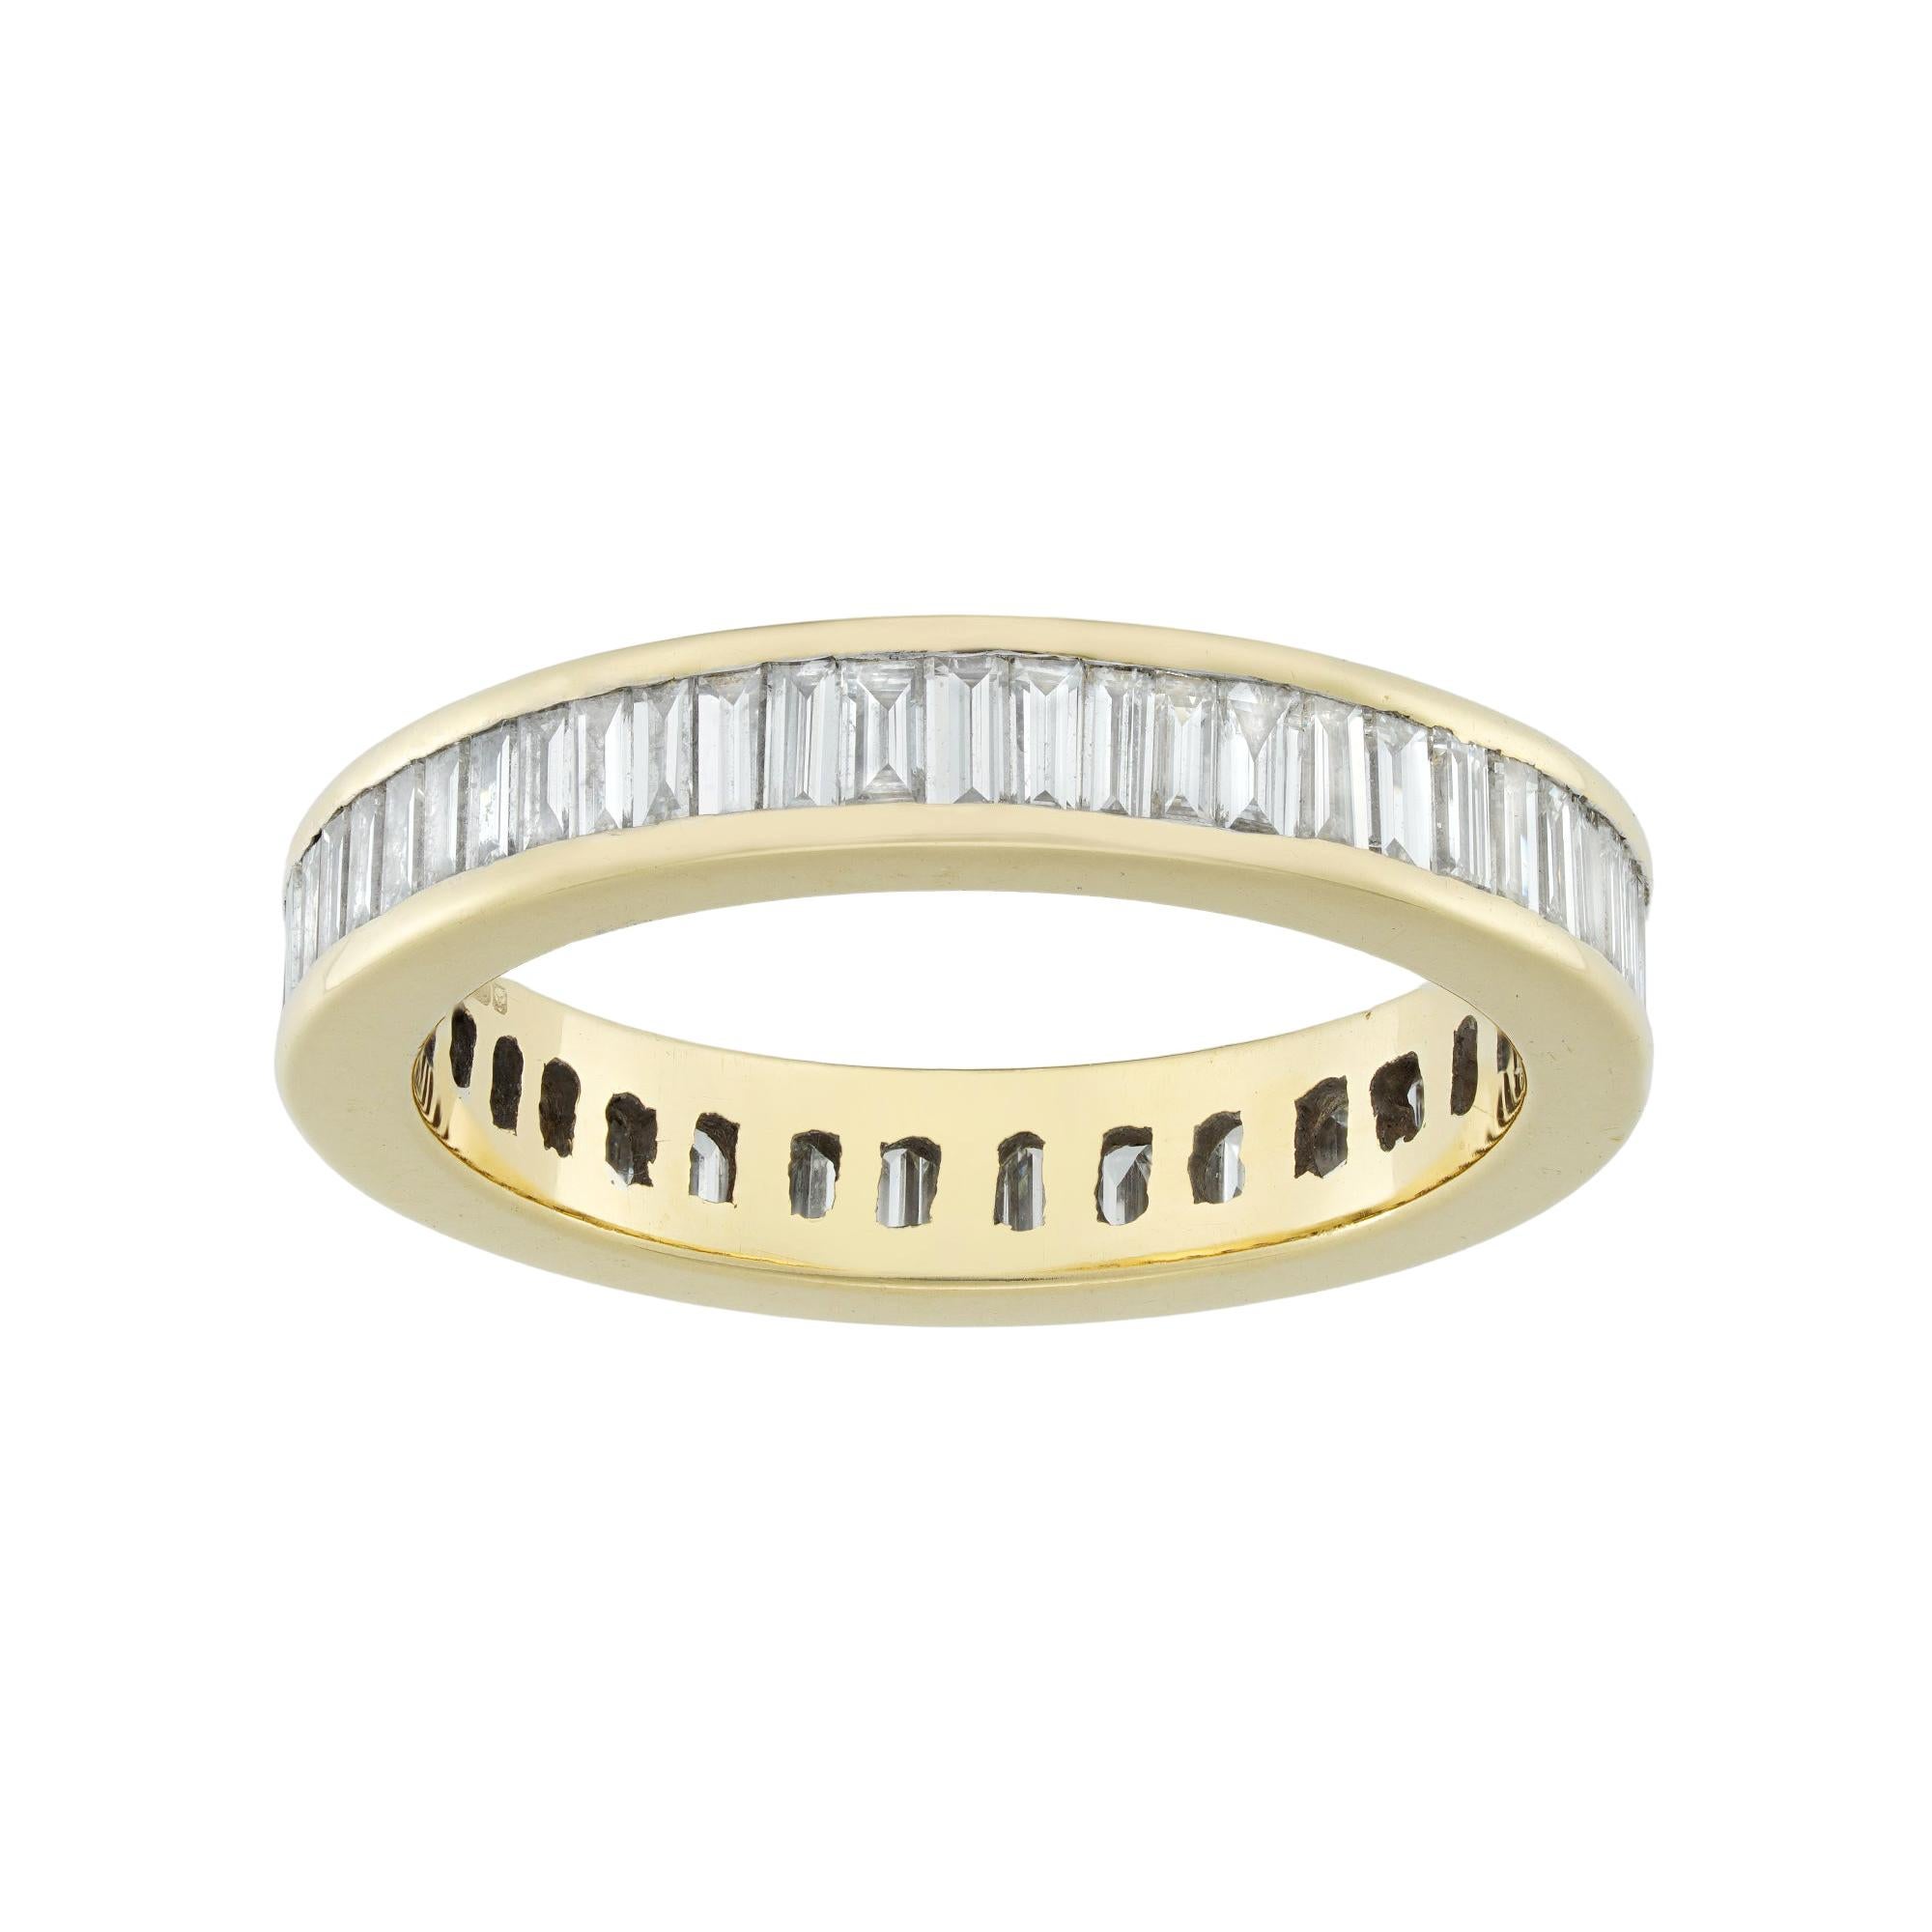 Baguette-Cut Diamond Full Eternity Ring